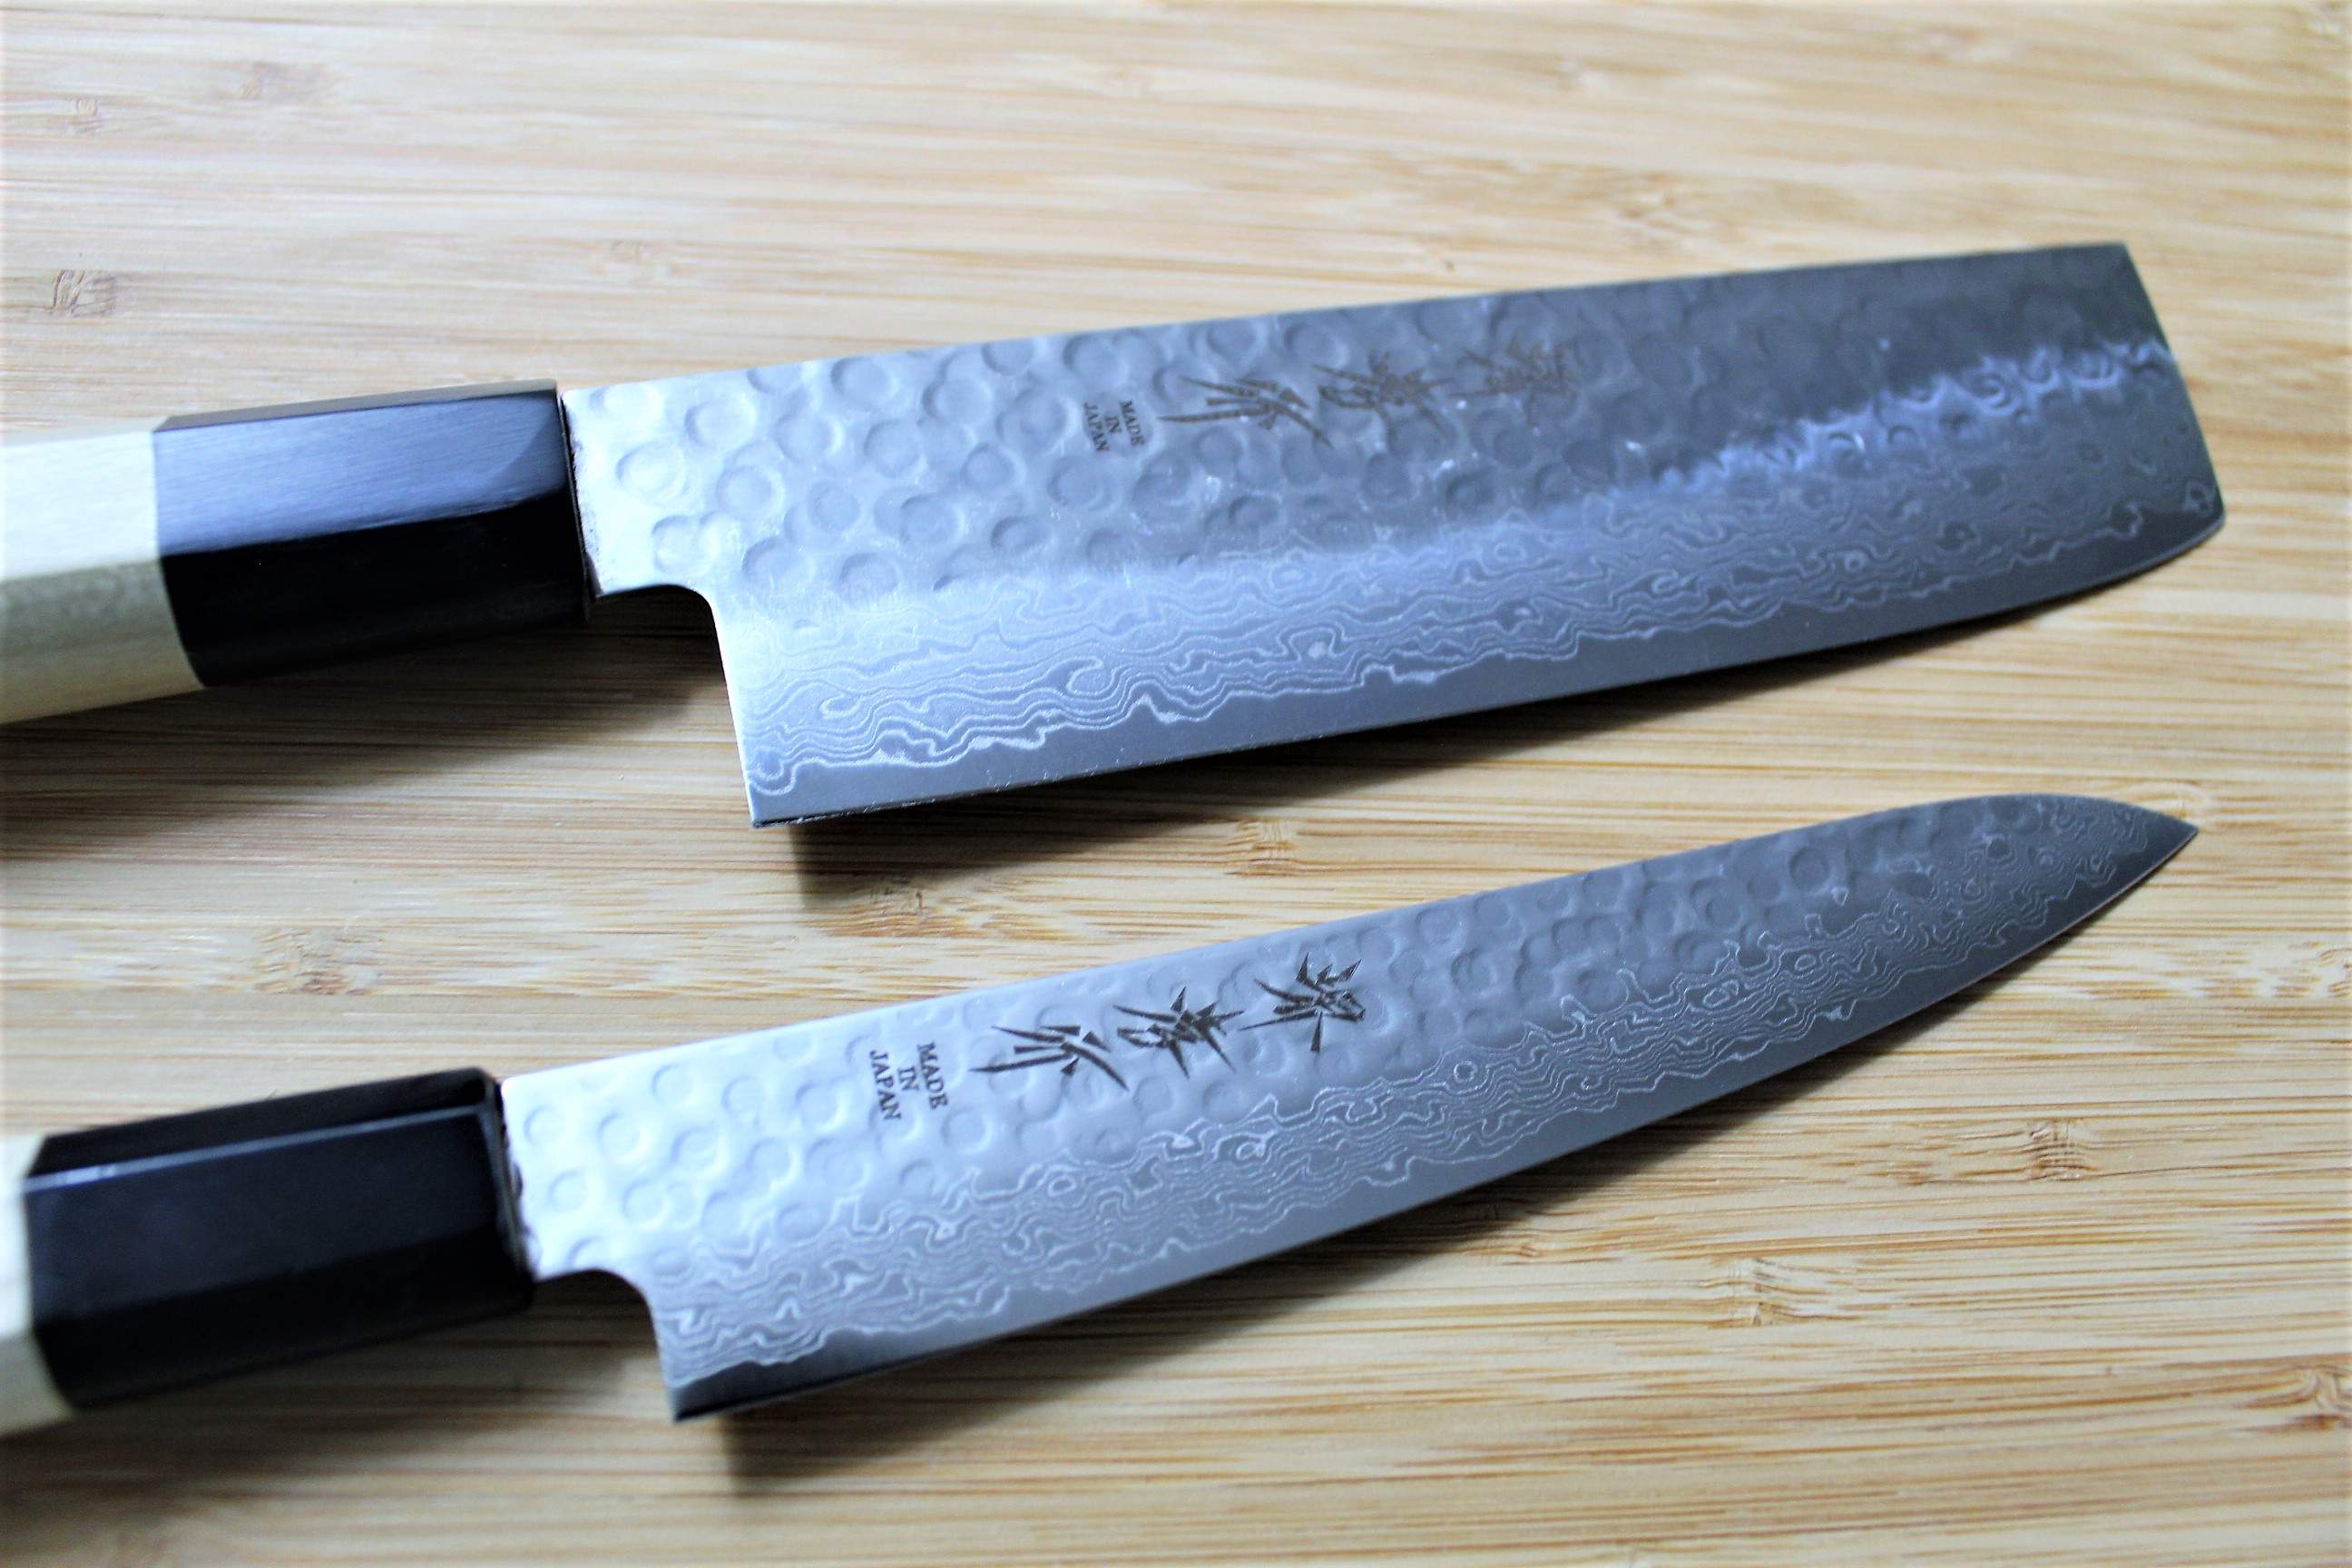 Vegetable Knife Vs Chef Knife